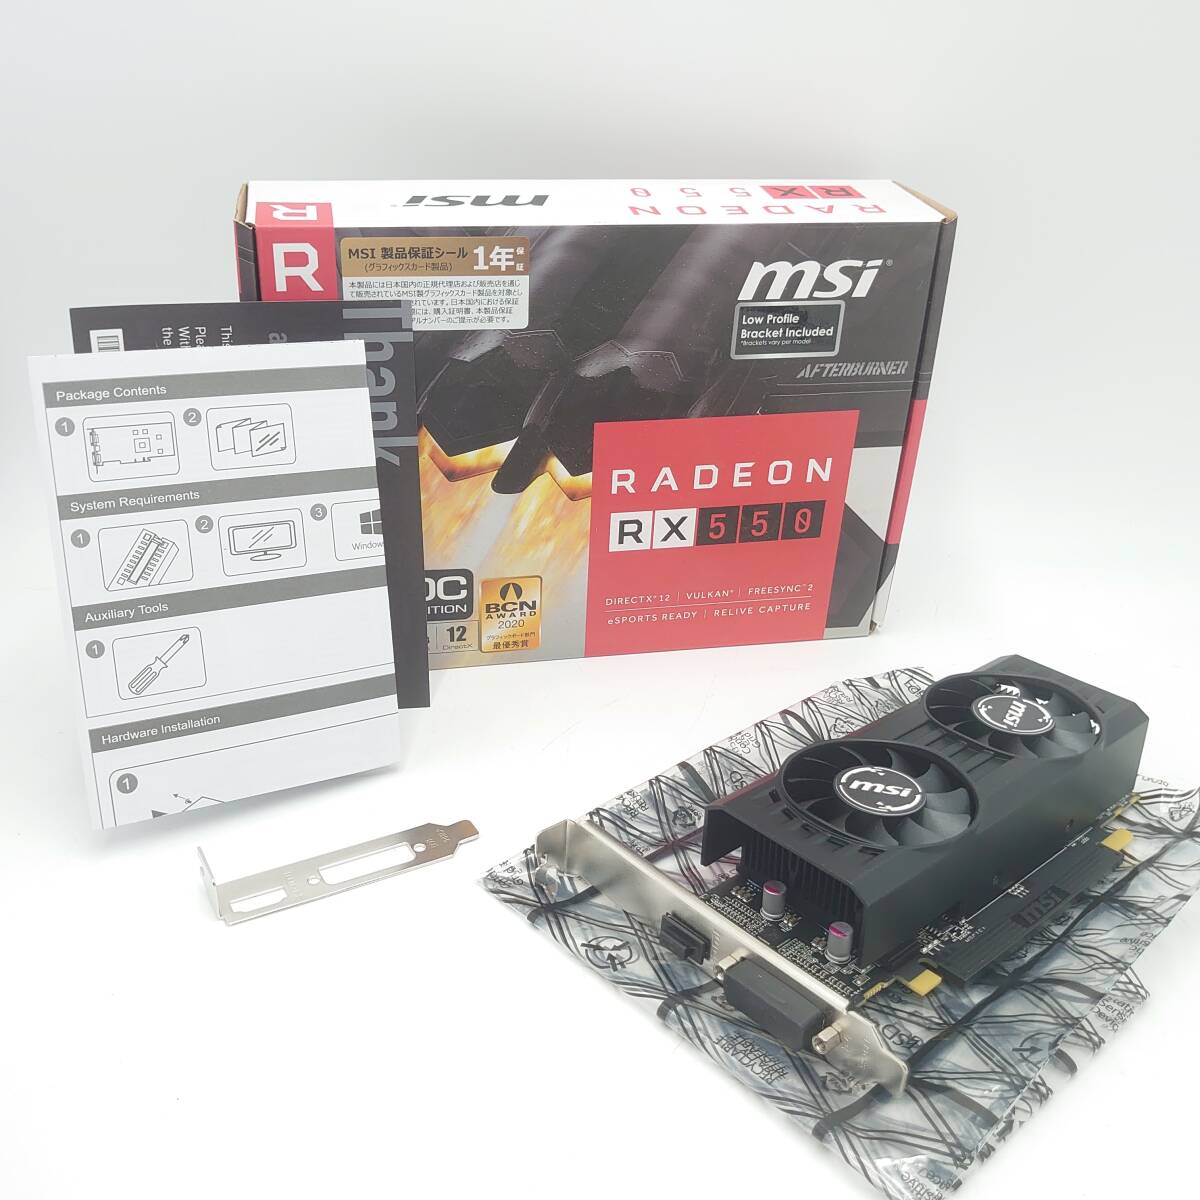 4A472D[ гарантия работы есть ]MSI Radeon RX 550 AERO ITX 4G JOC оригинальная коробка иметь графика память 4GB